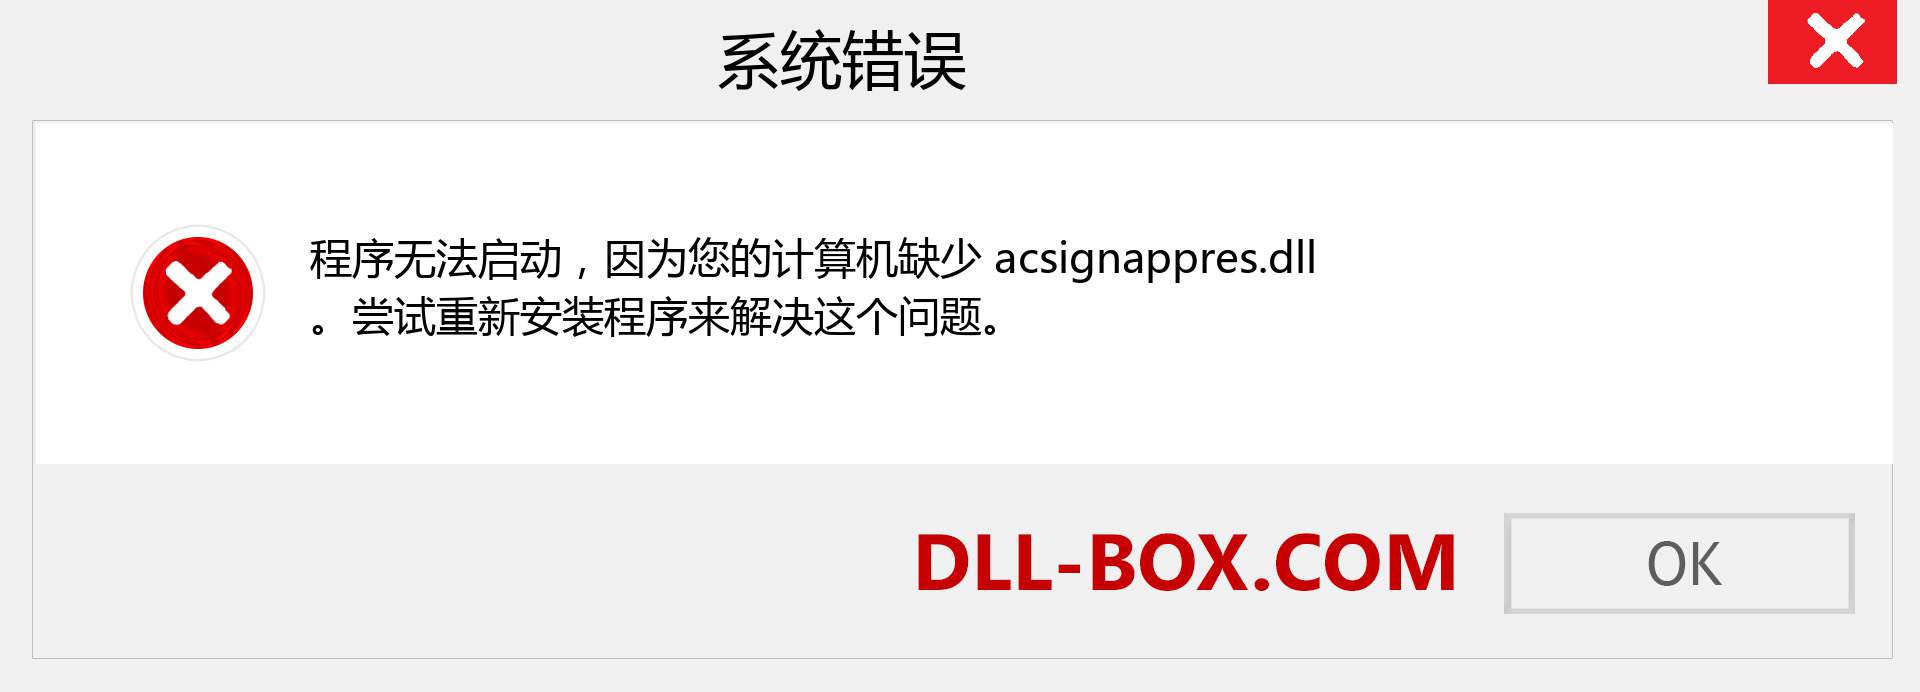 acsignappres.dll 文件丢失？。 适用于 Windows 7、8、10 的下载 - 修复 Windows、照片、图像上的 acsignappres dll 丢失错误